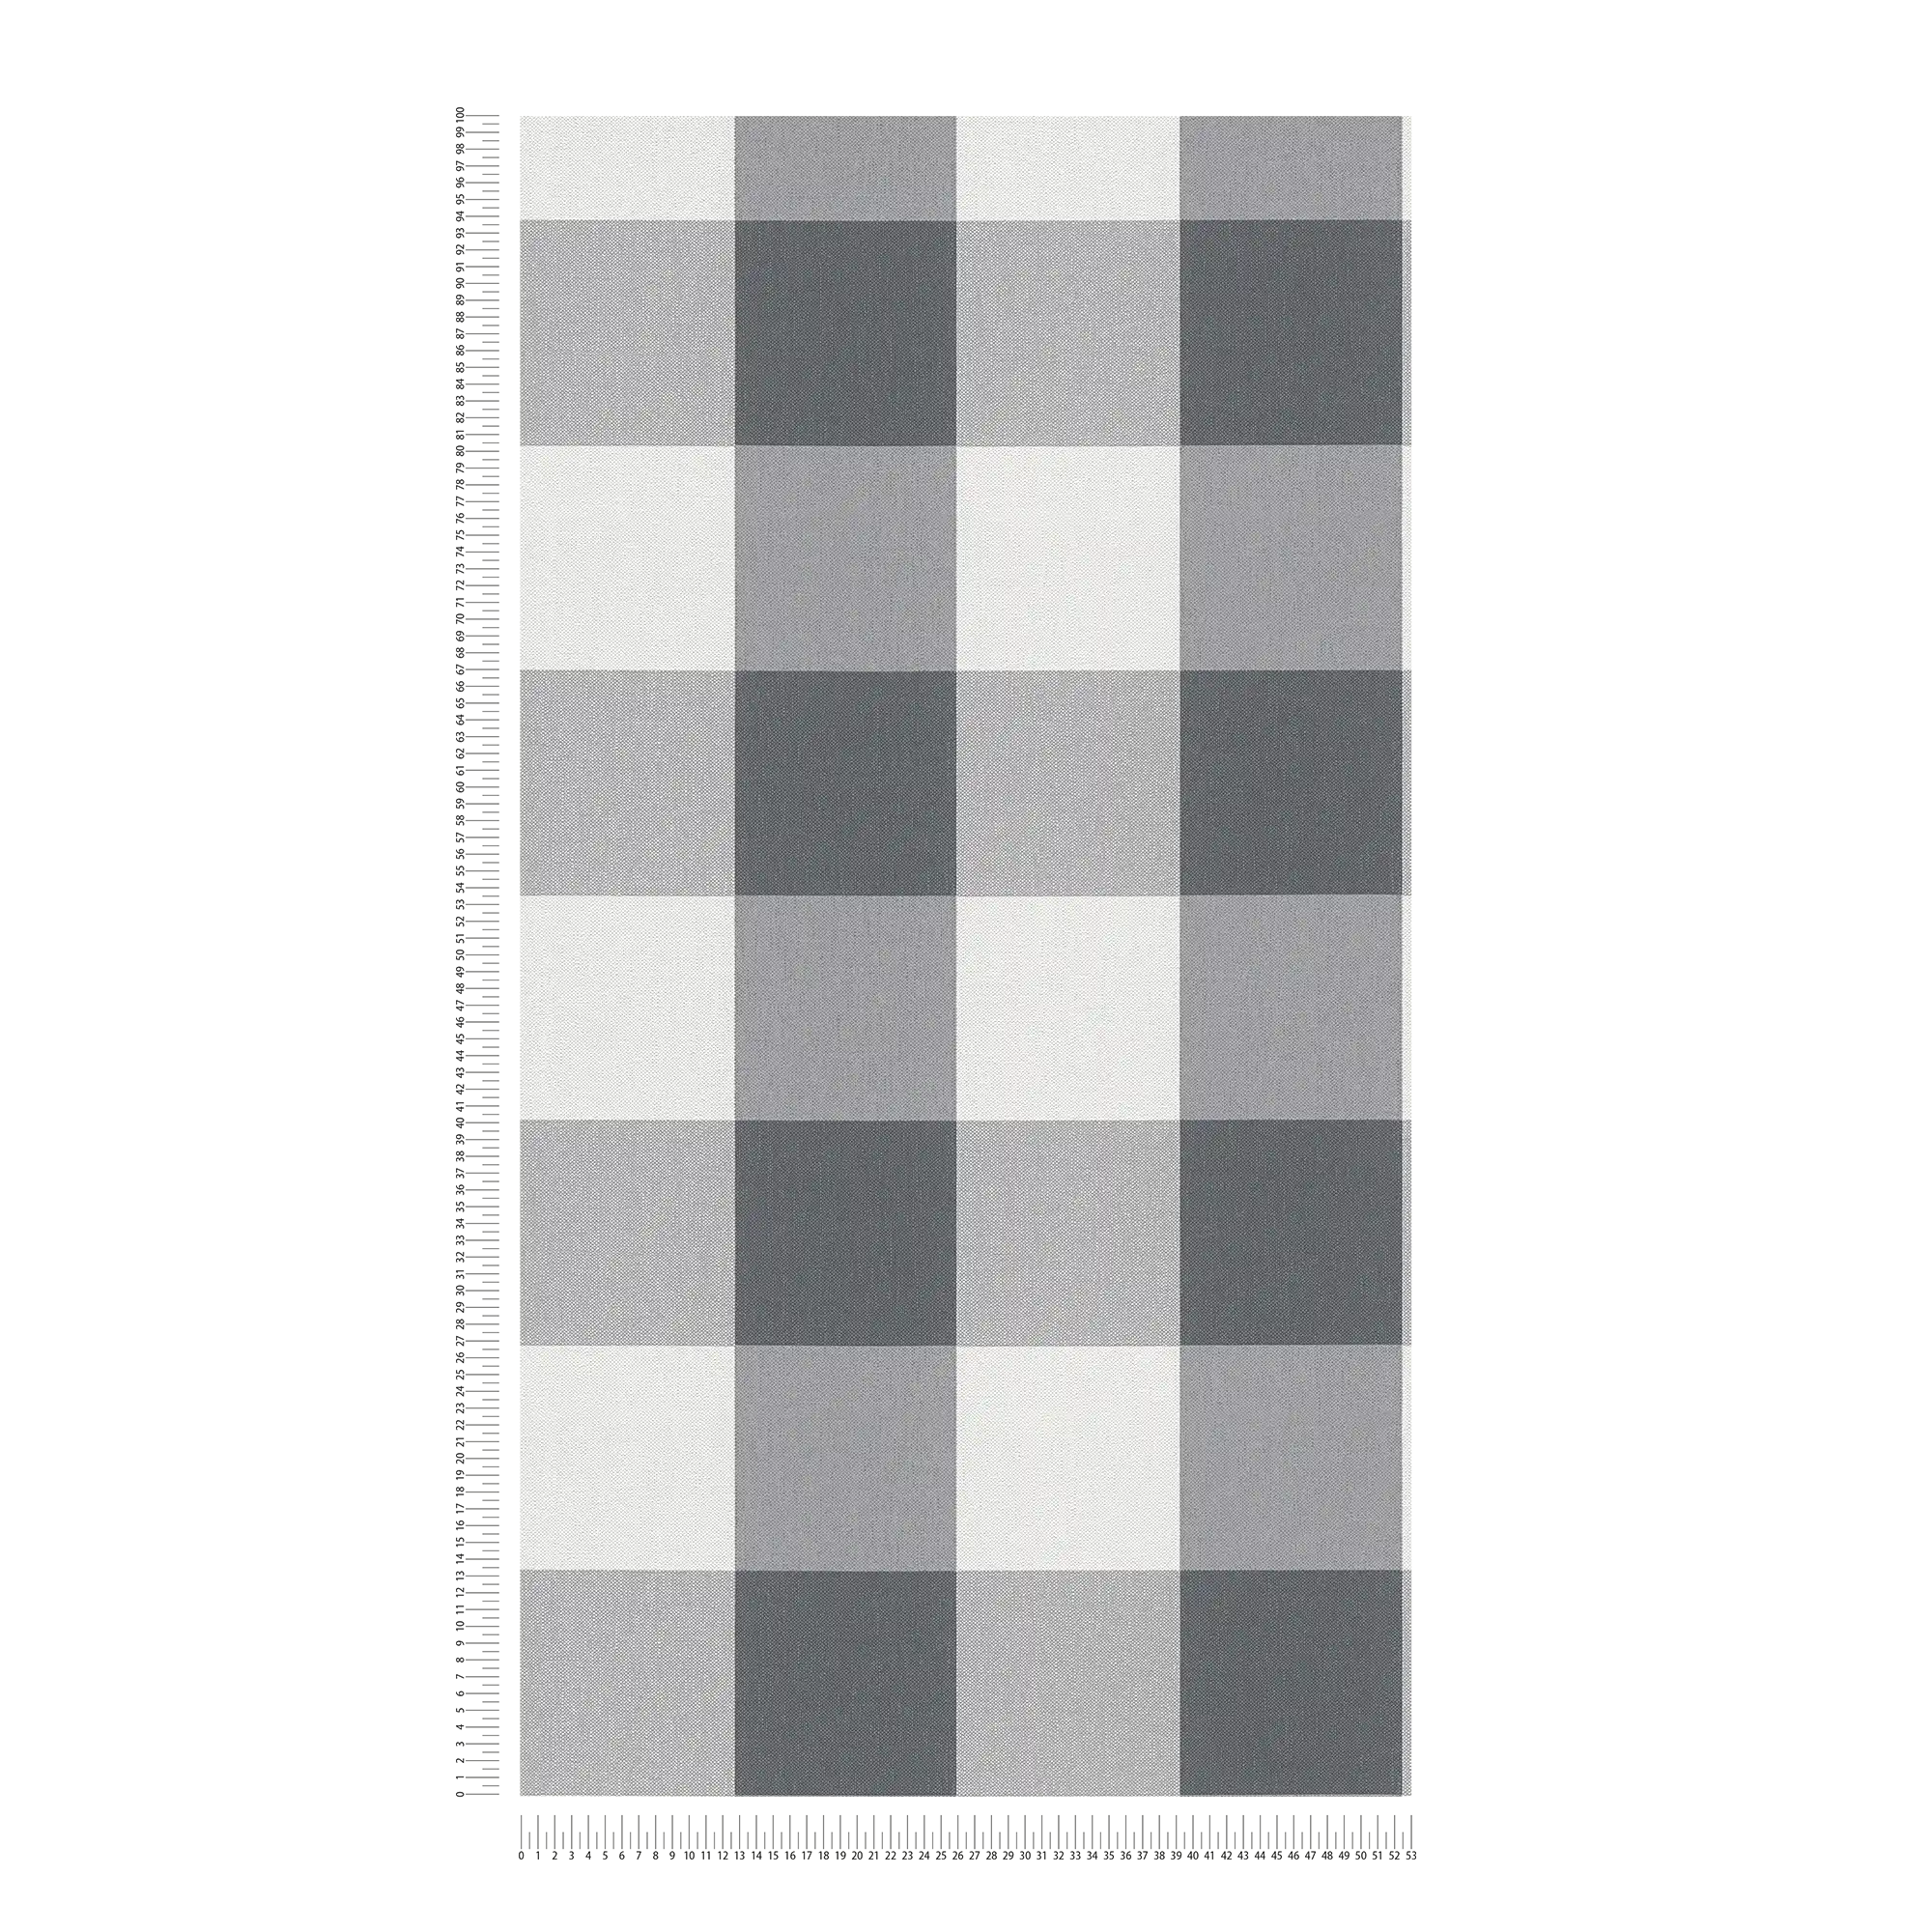             Karierte Tapete mit Textil-Look in harmonischen Farben – Weiß, Grau
        